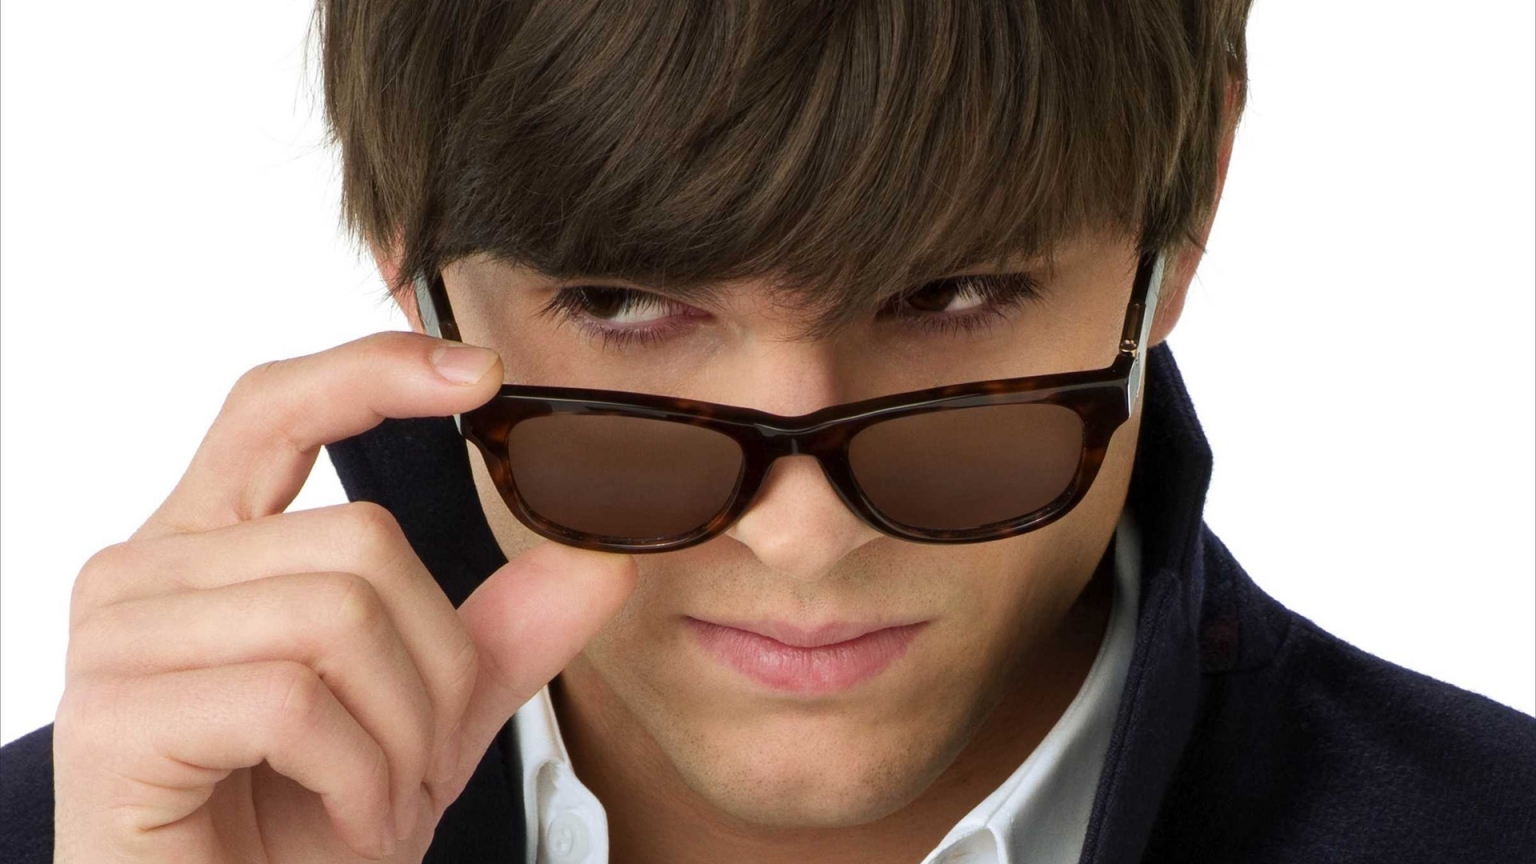 Ashton Kutcher with Sunglasses for 1536 x 864 HDTV resolution